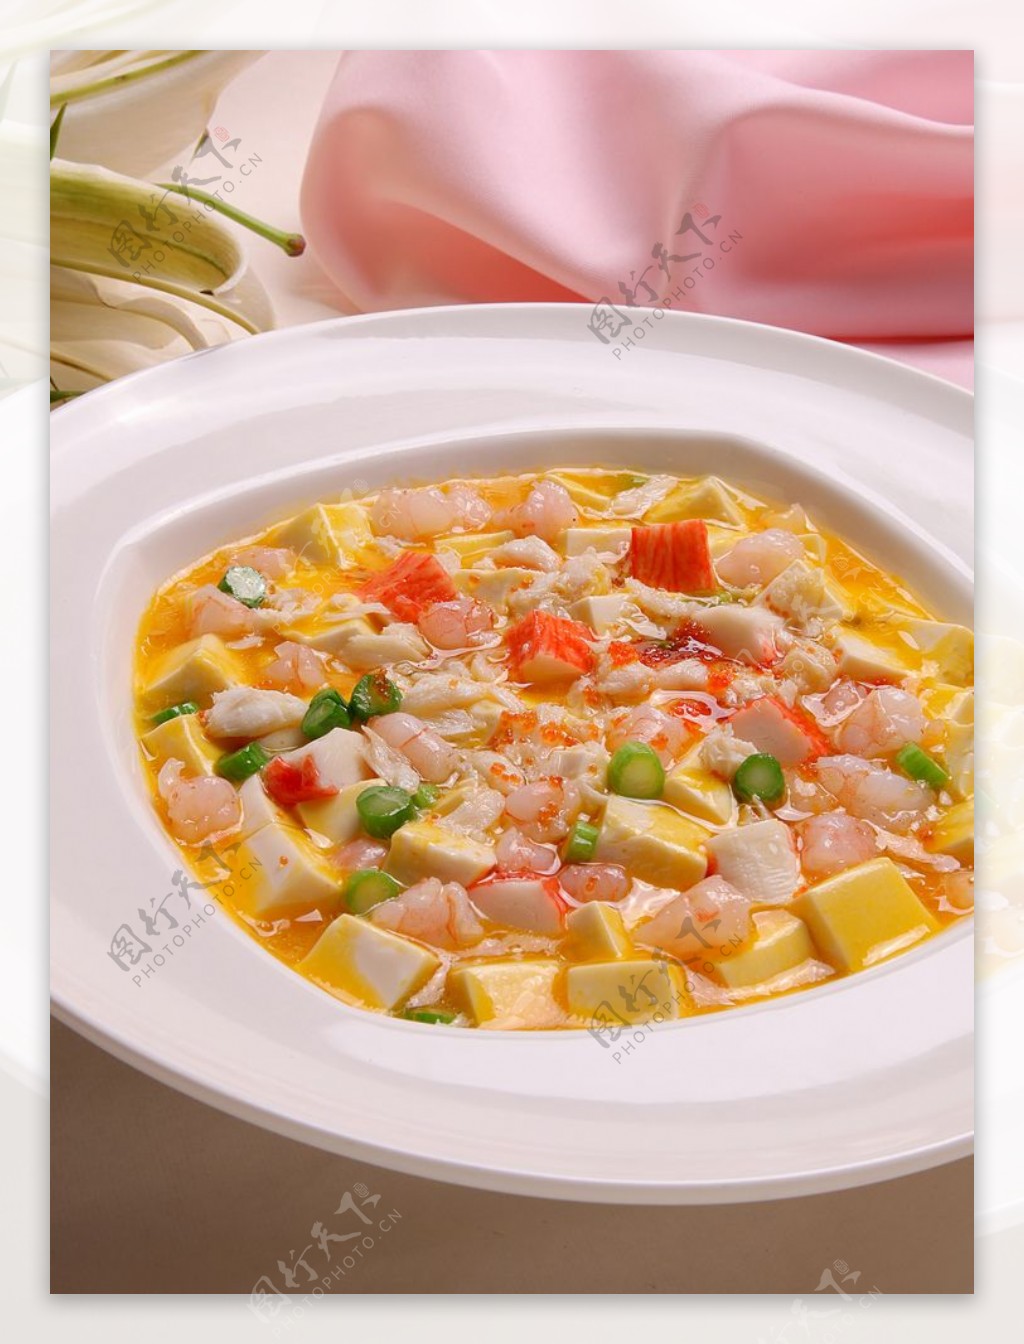 【蒲東小館】超鮮味蟹粉豆腐煲 – FoodieCurly